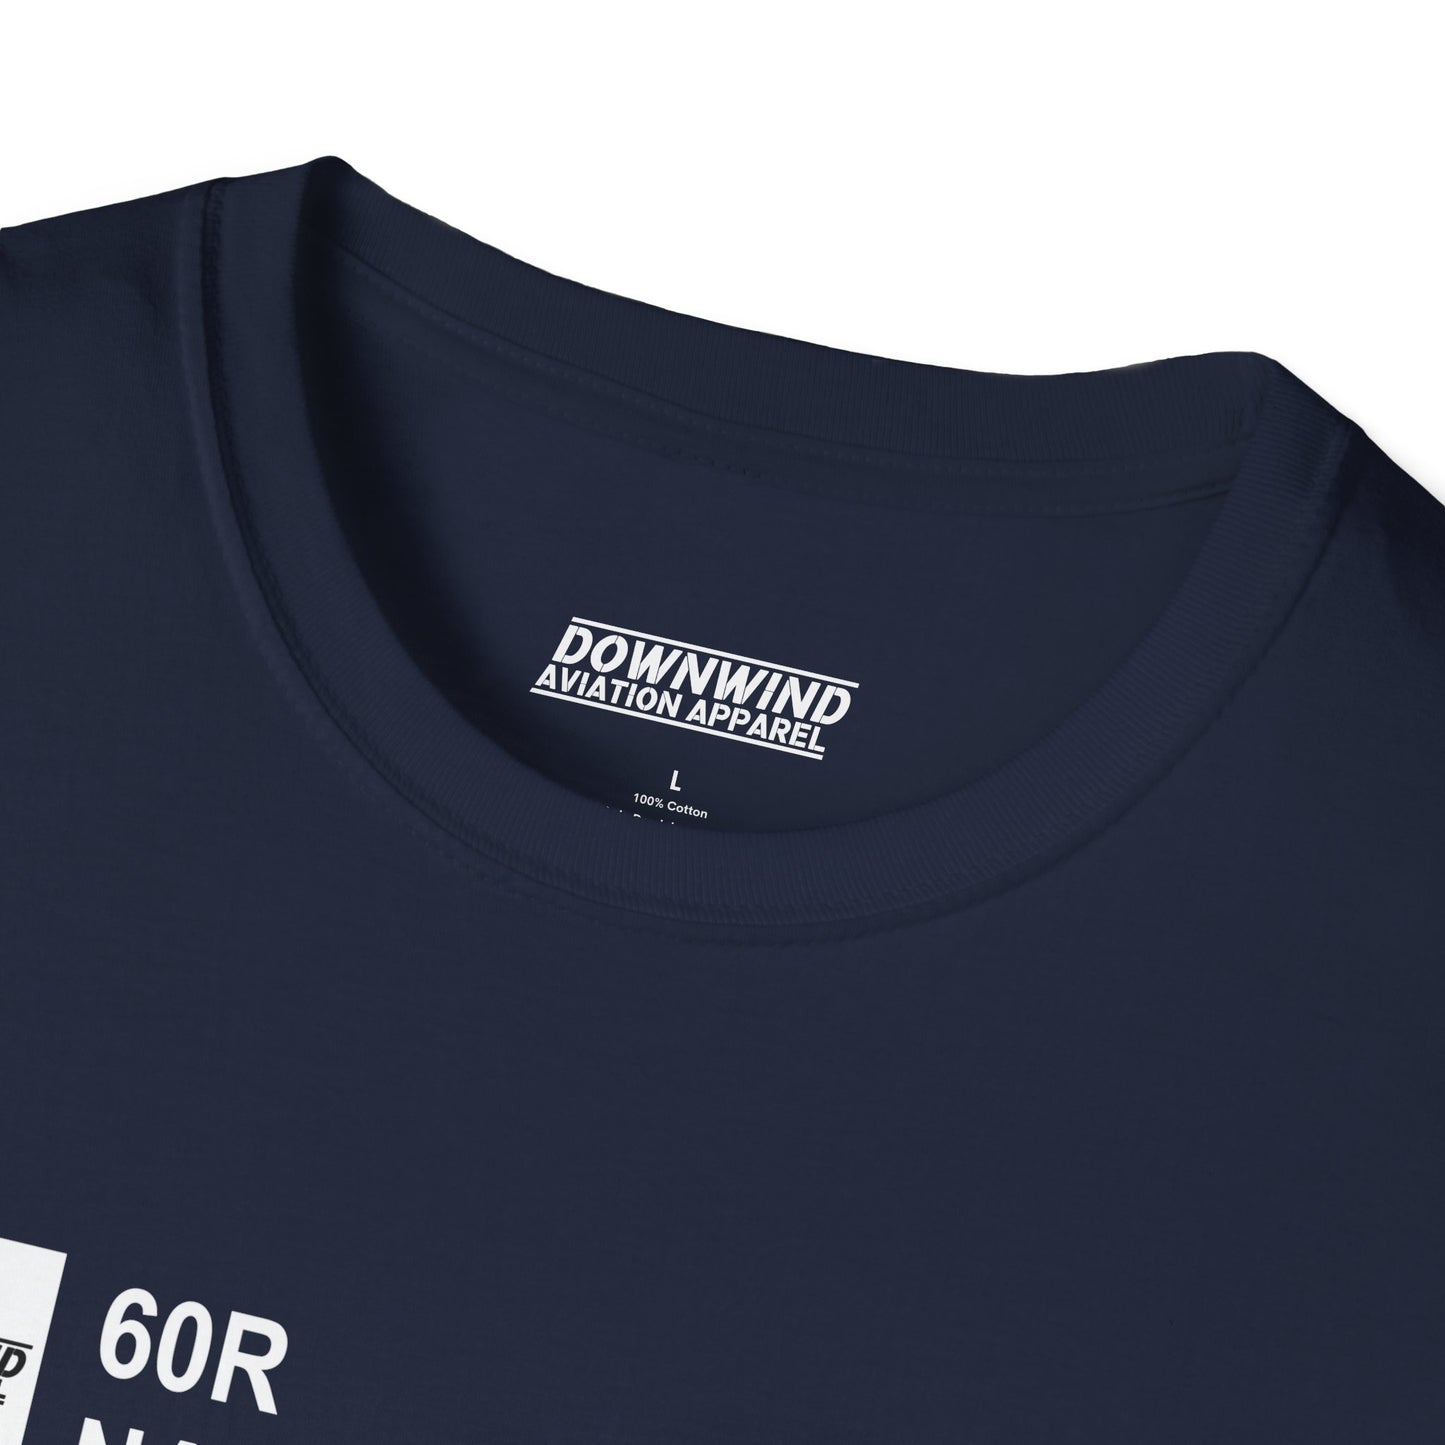 60R / Navasota Muni. T-Shirt